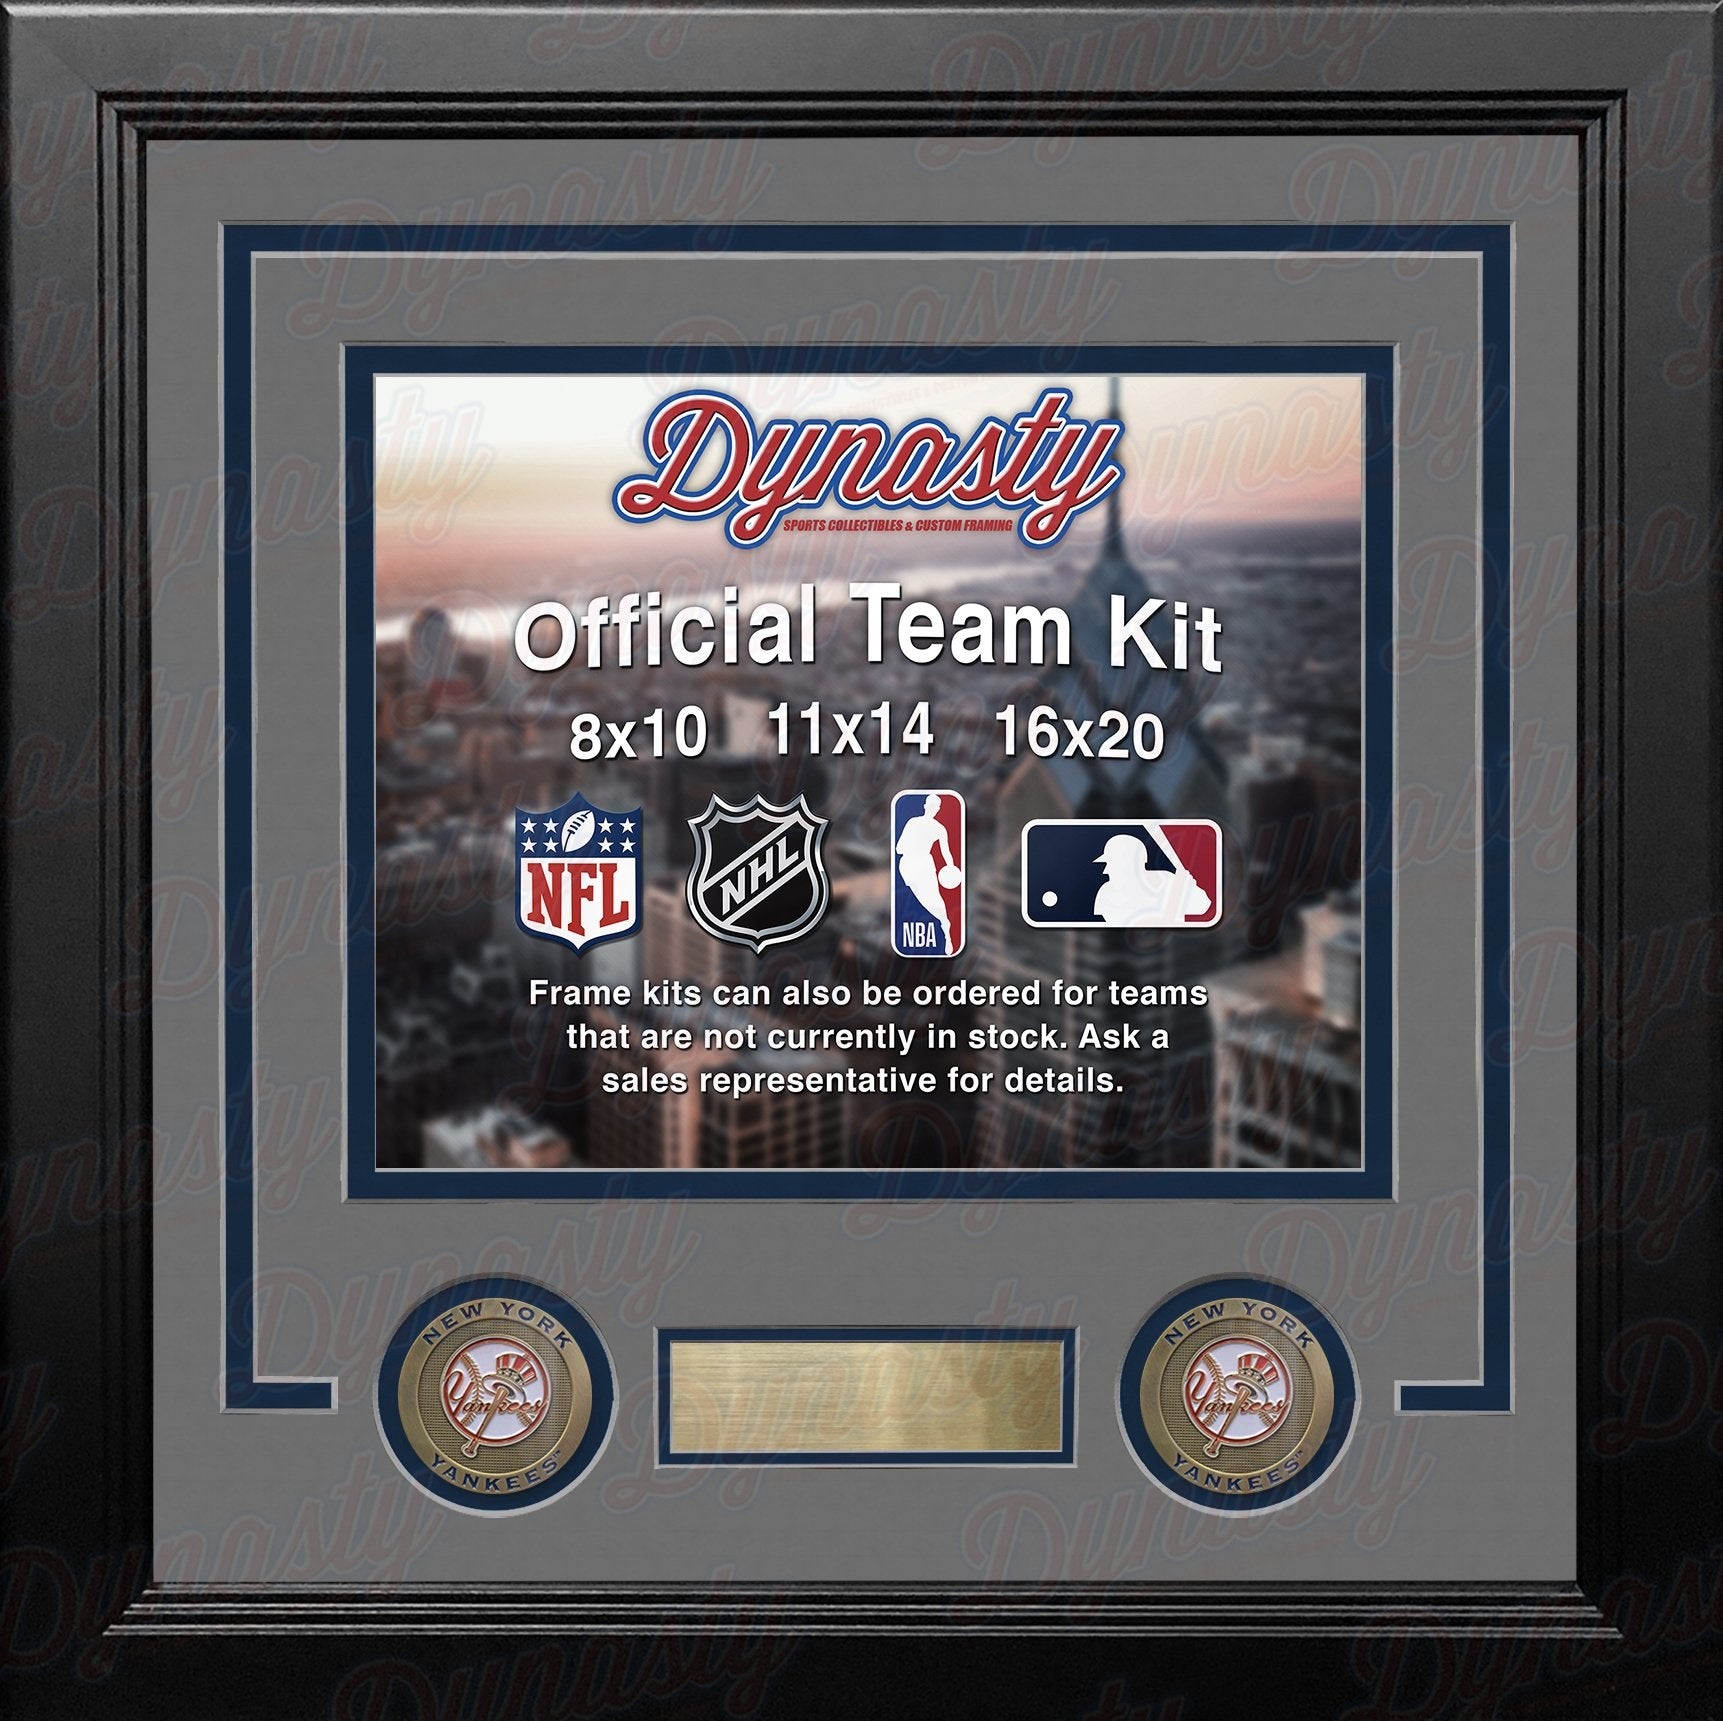 New York Yankees Custom MLB Baseball 8x10 Picture Frame Kit (Multiple Colors) - Dynasty Sports & Framing 